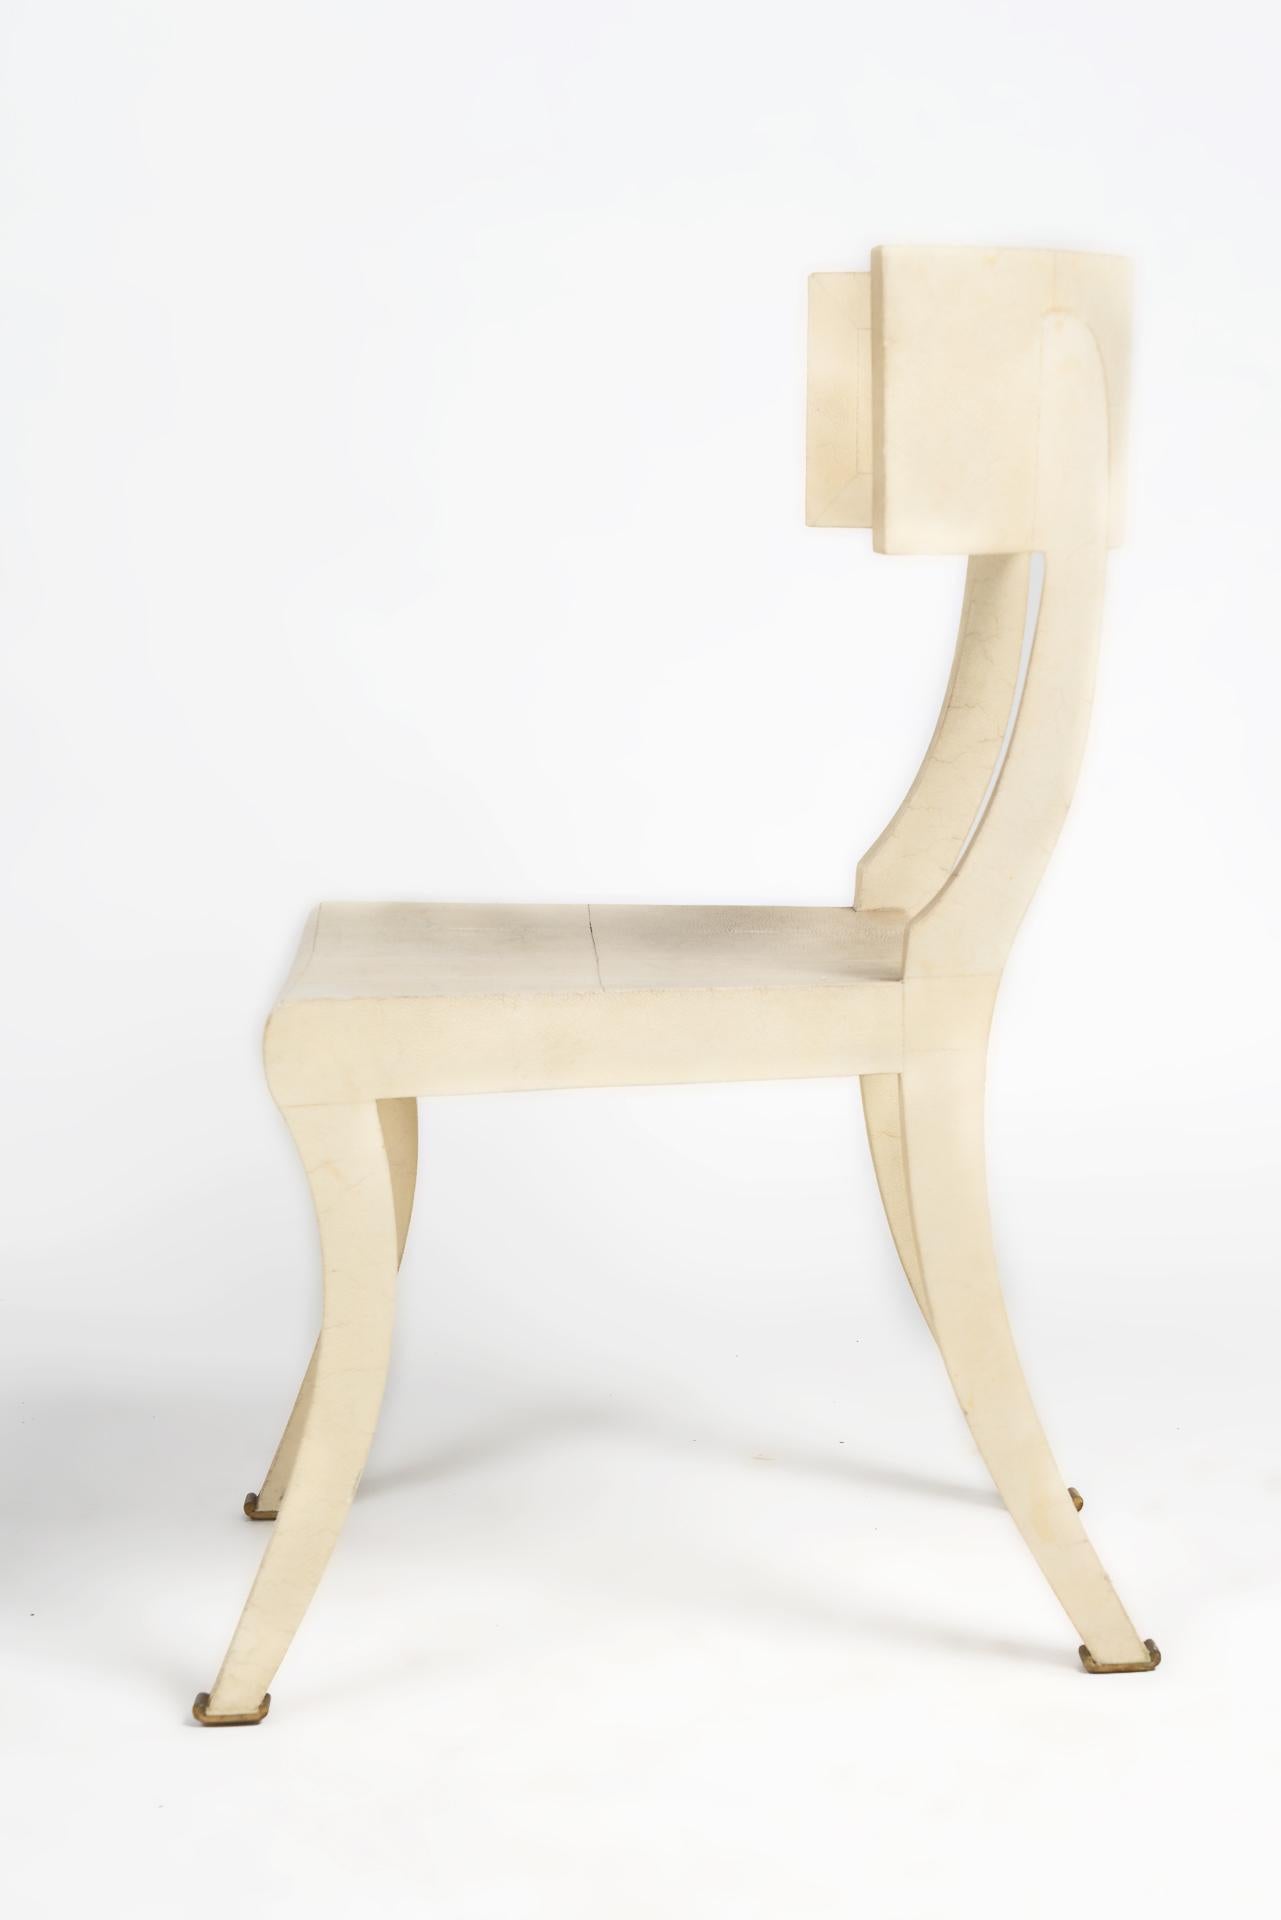 Dieser geschwungene Stuhl zeigt die detailreiche Arbeit der Manufaktur Maitland Smith, insbesondere die Arbeit von Shagreen auf der Holzstruktur ist einzigartig und zeigt das Design von Karl Springer. In der rechten oberen Ecke fehlt ein kleines